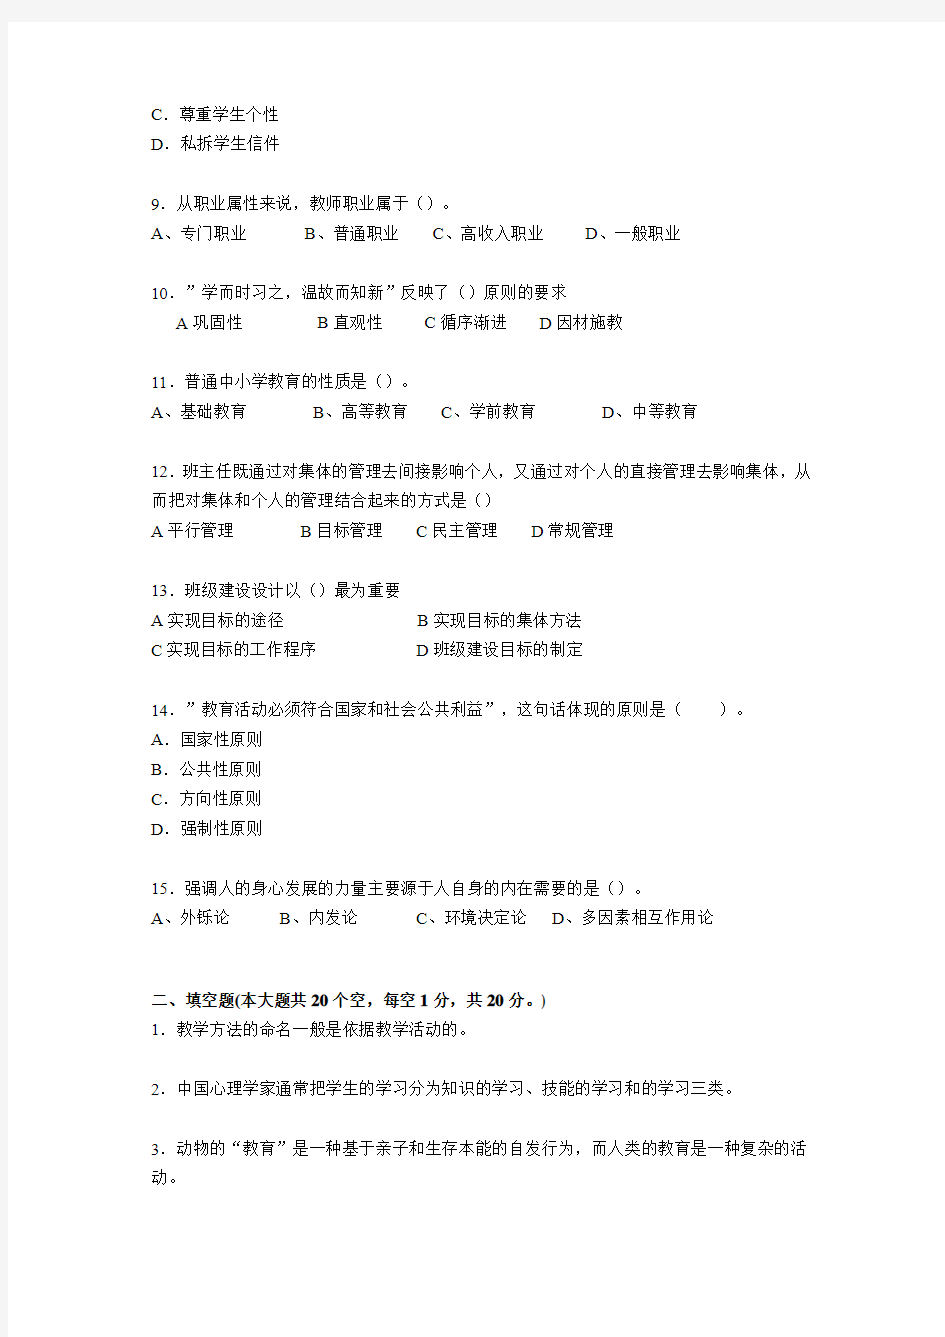 广西2016年下半年教师资格证结构化考试试题